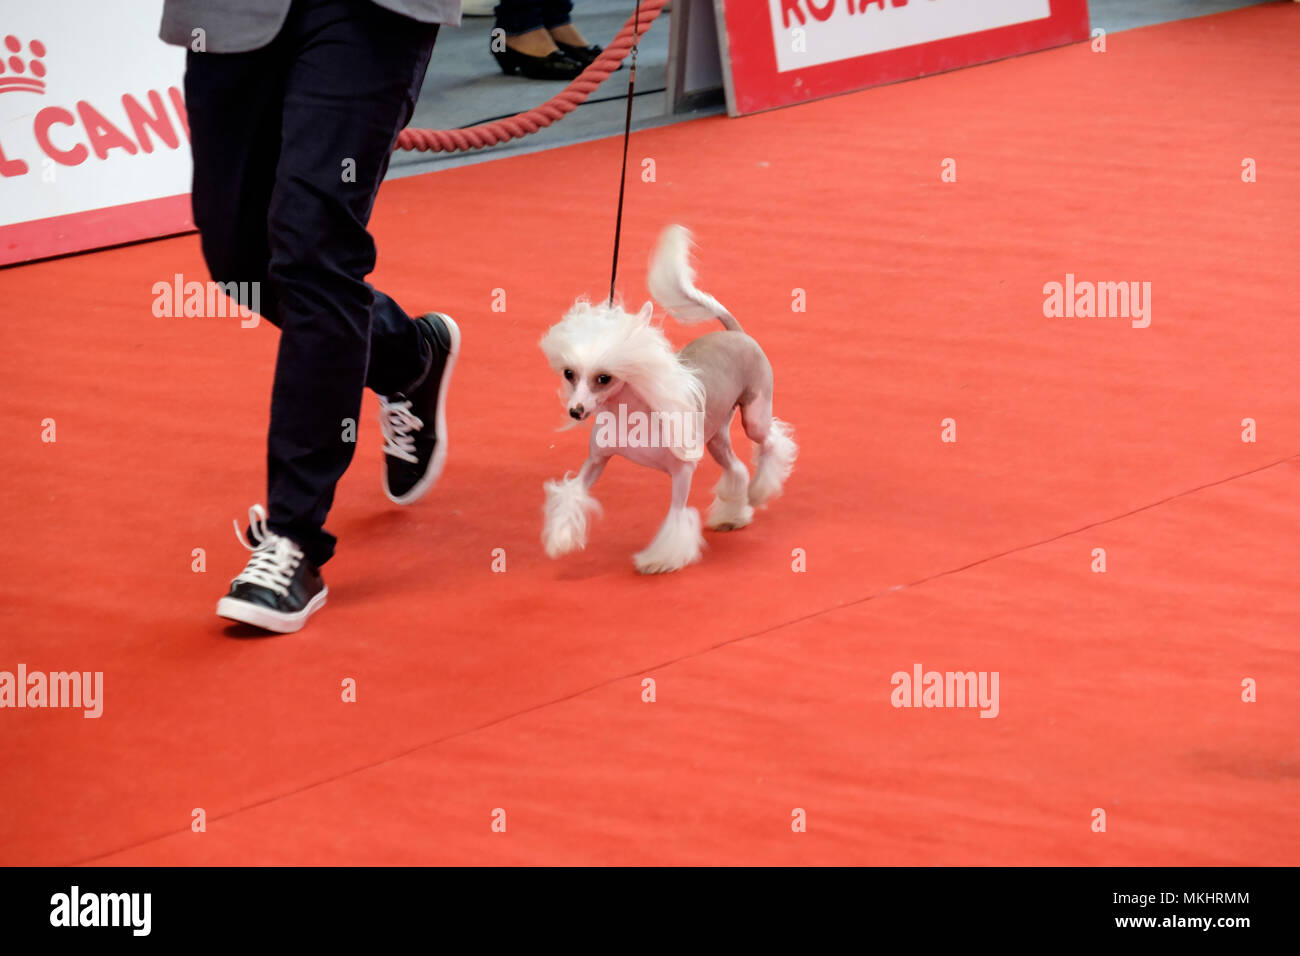 Persona mostrando su perro crestado de China a los magistrados durante una competencia canina Foto de stock